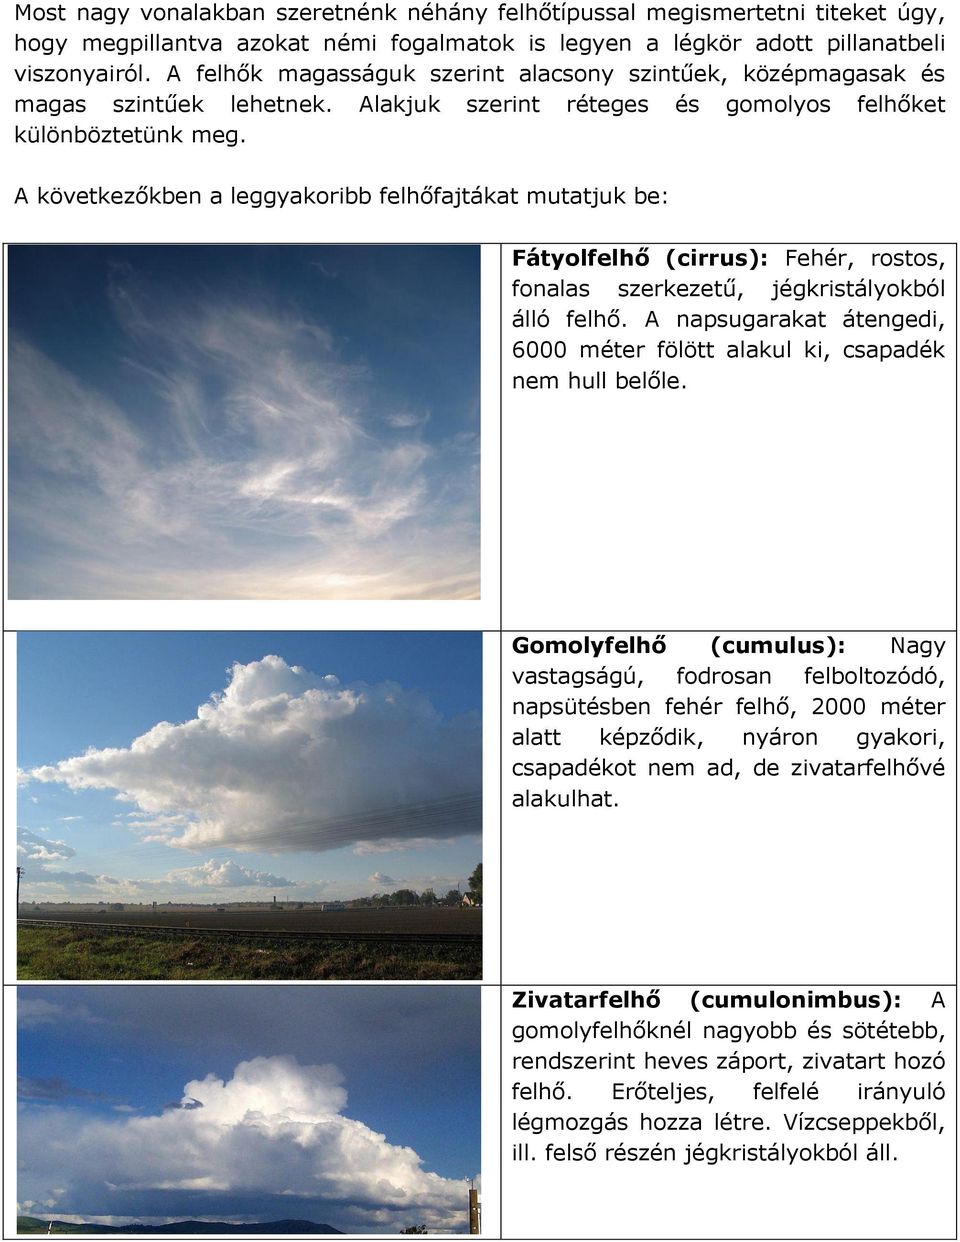 A következőkben a leggyakoribb felhőfajtákat mutatjuk be: Fátyolfelhő (cirrus): Fehér, rostos, fonalas szerkezetű, jégkristályokból álló felhő.